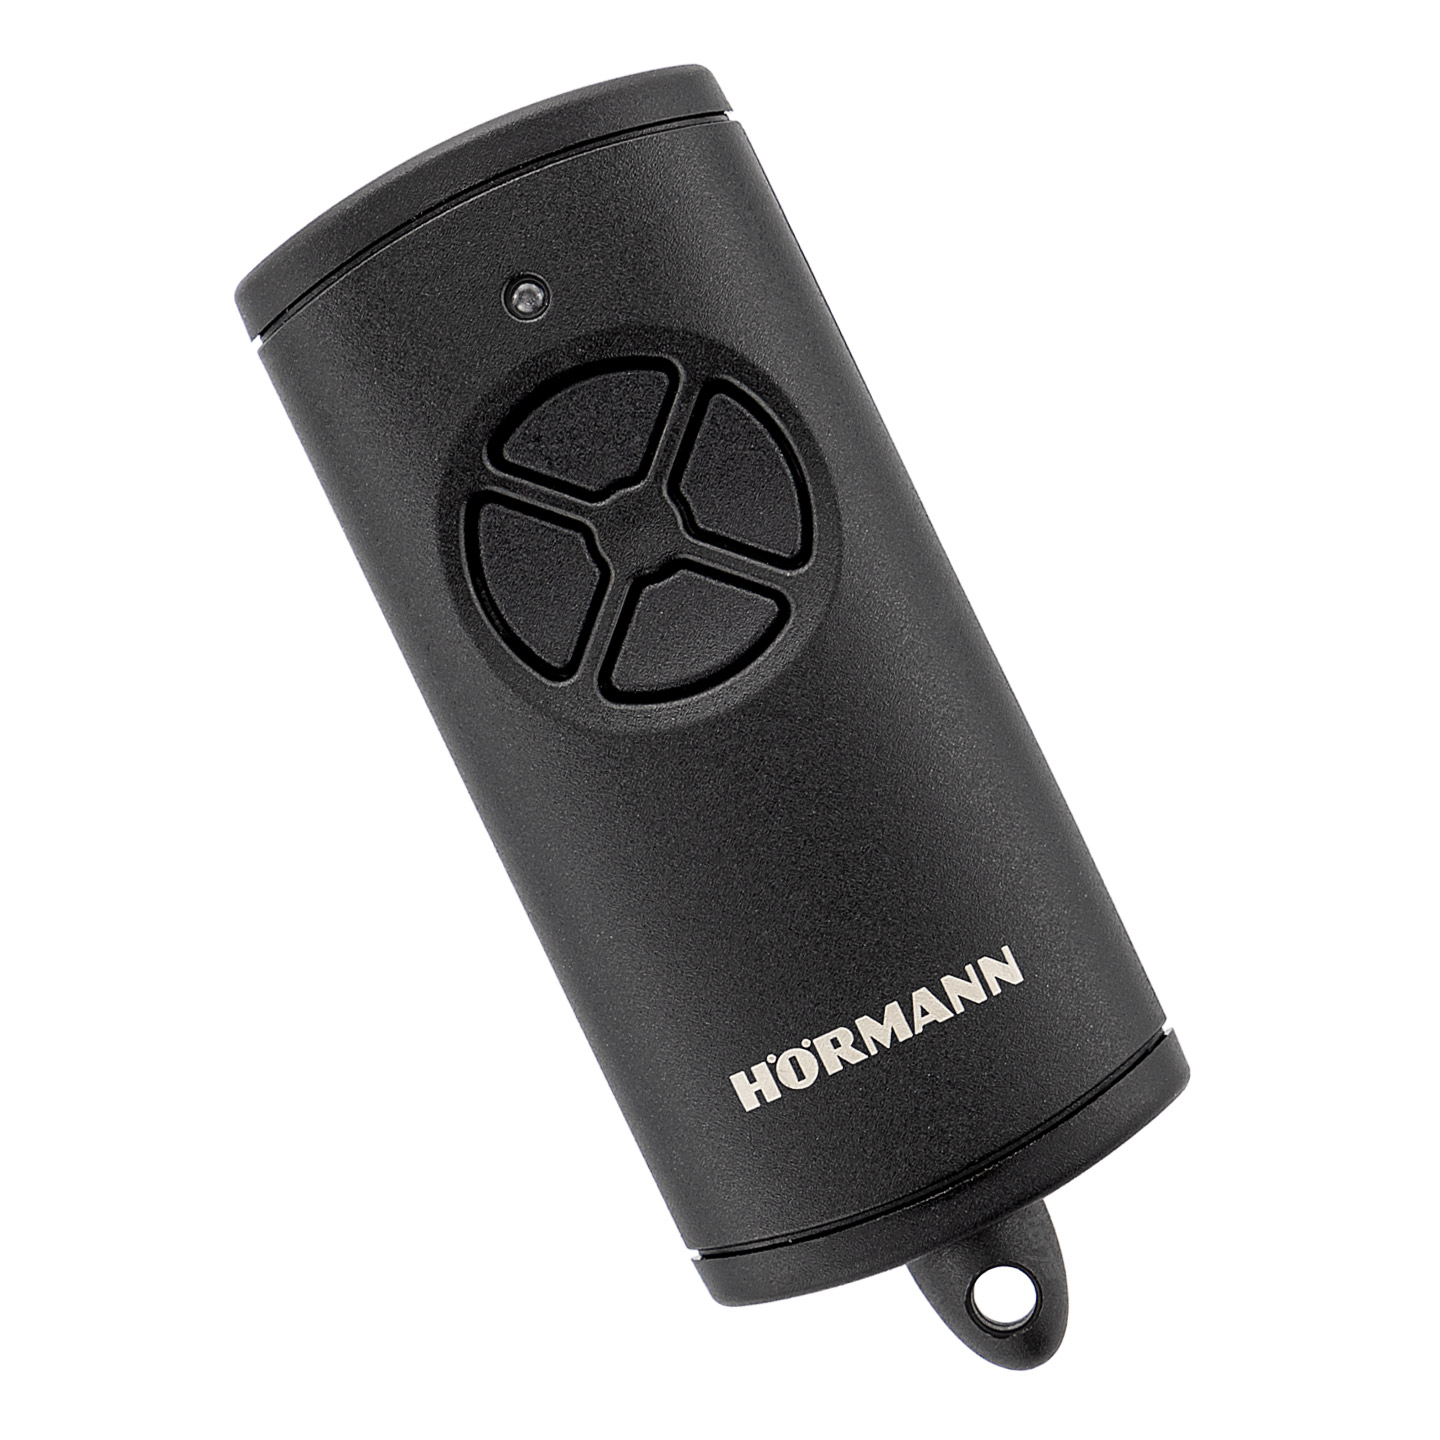 Hörmann Handsender HSE4 BS mit 4 Tastenfunktionen, mit Öse für  Schlüsselanhänger, BiSecur Funktechnologie, (für Garagentor, Einfahrtstor,  Haustür